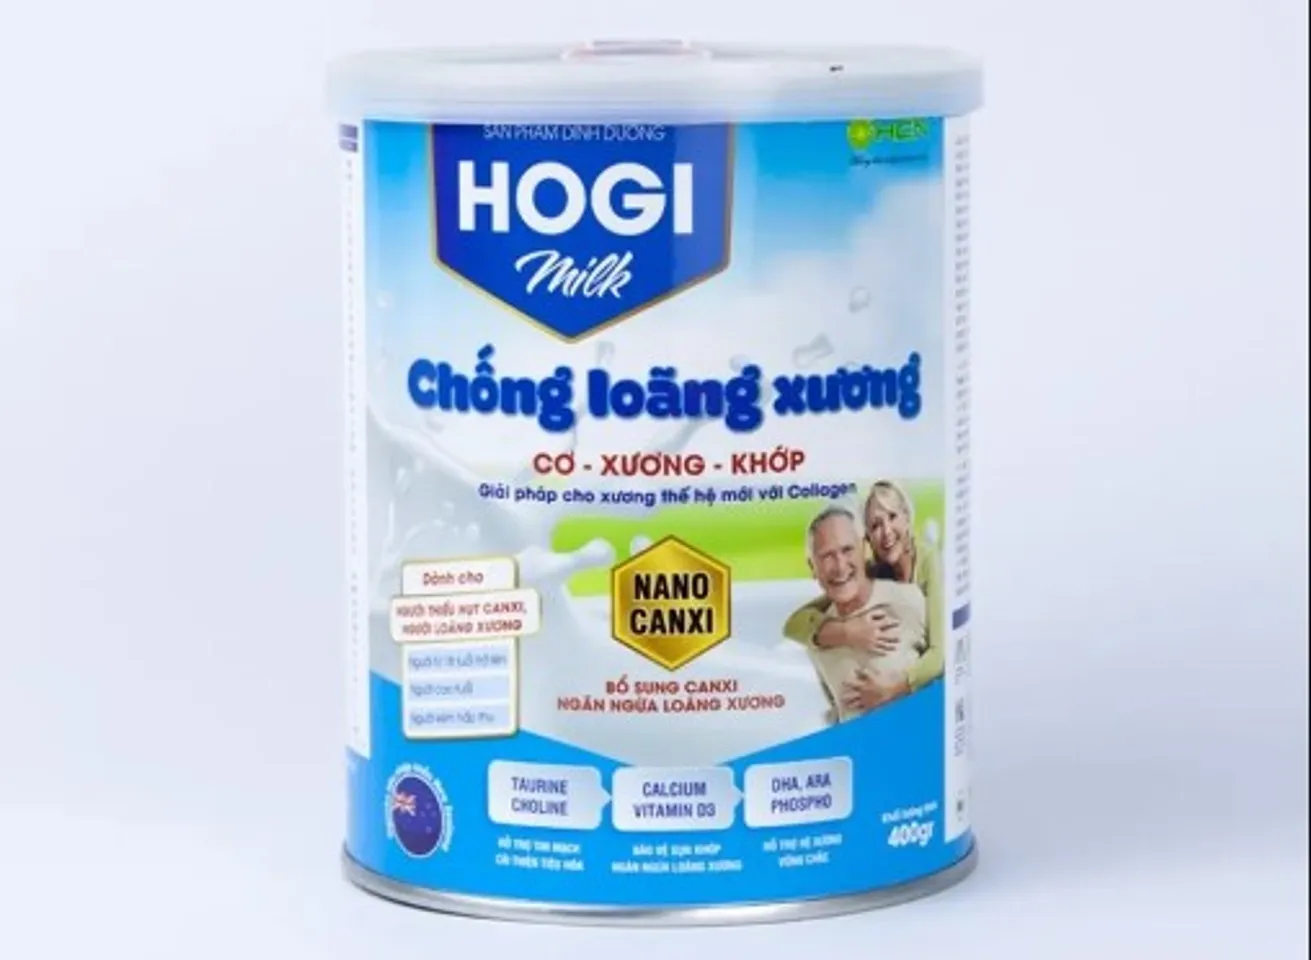 Sữa Hogi Milk hỗ trợ chống loãng xương